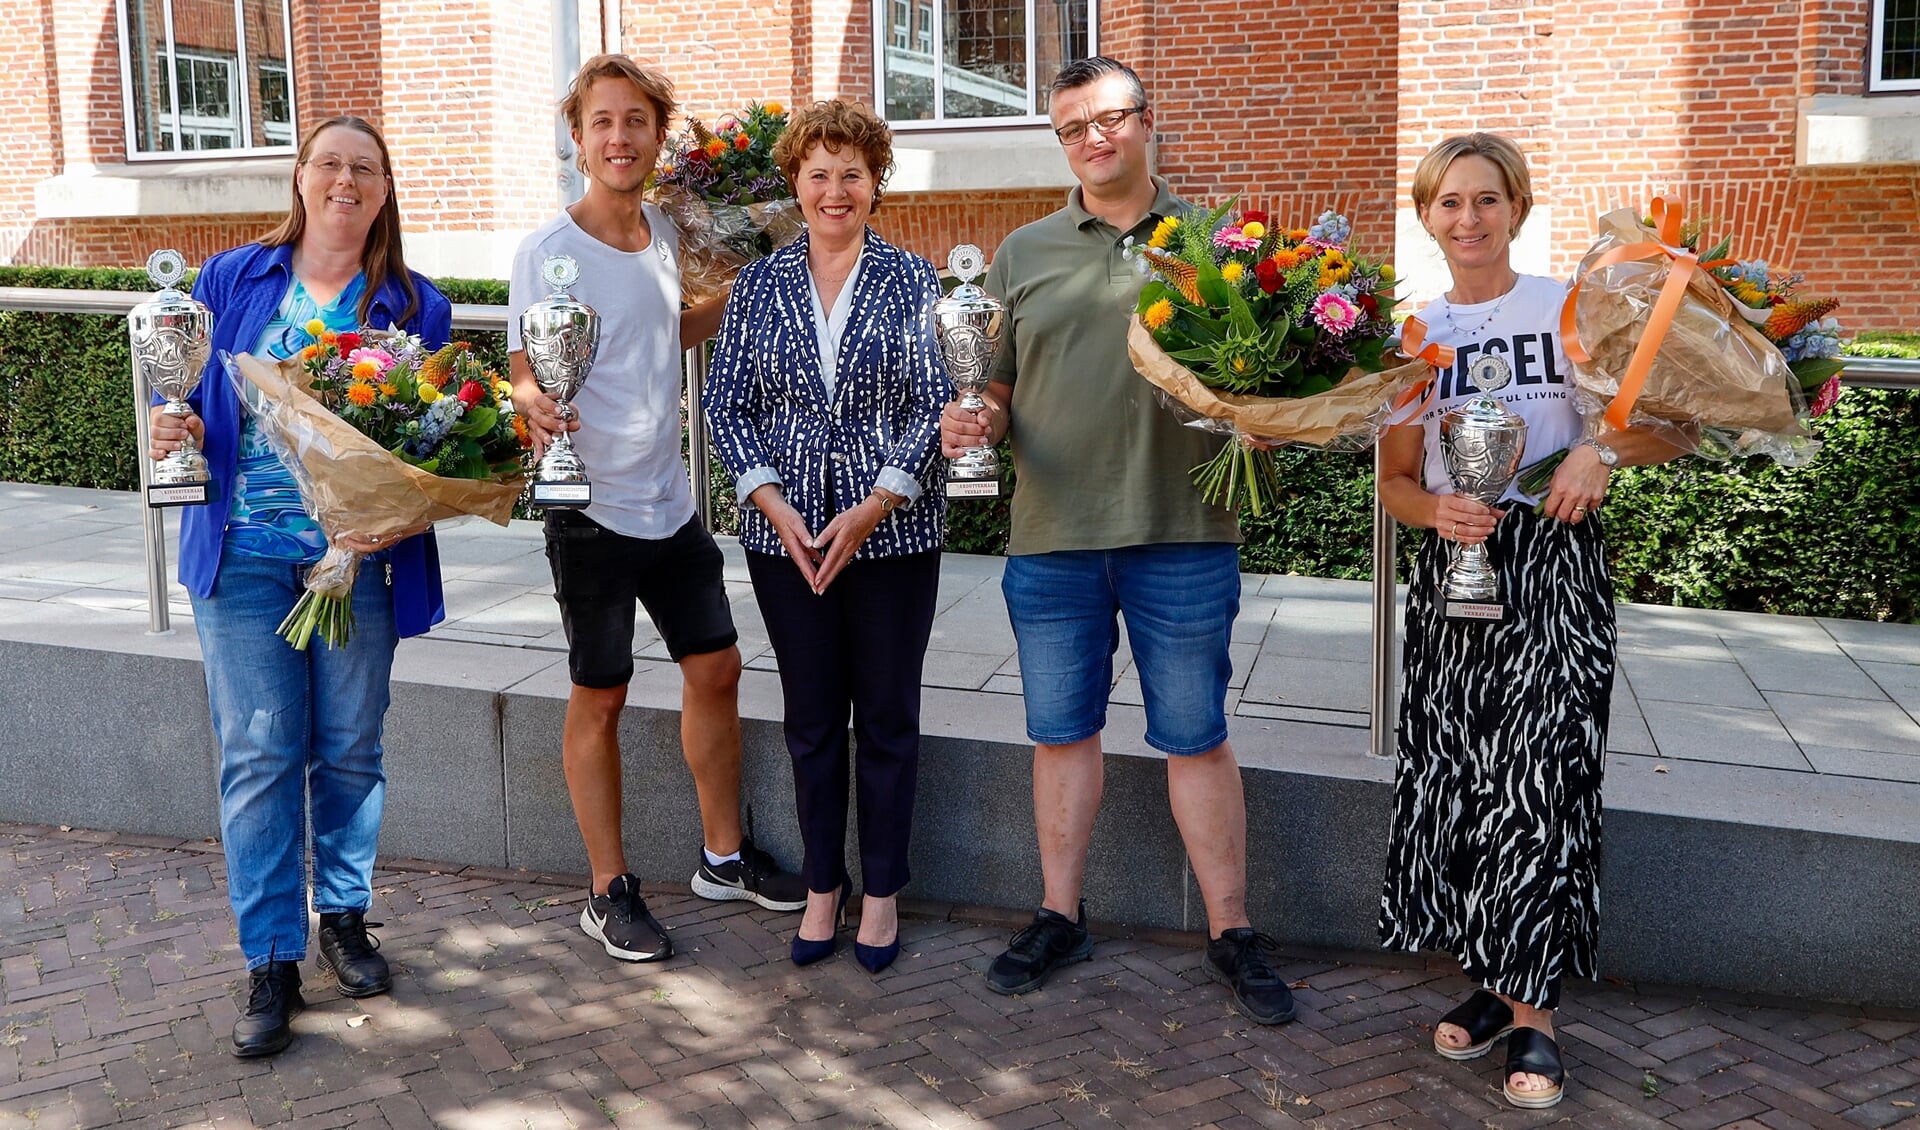 De winnaars van de kermisprijzen met in het midden burgemeester Kompier.